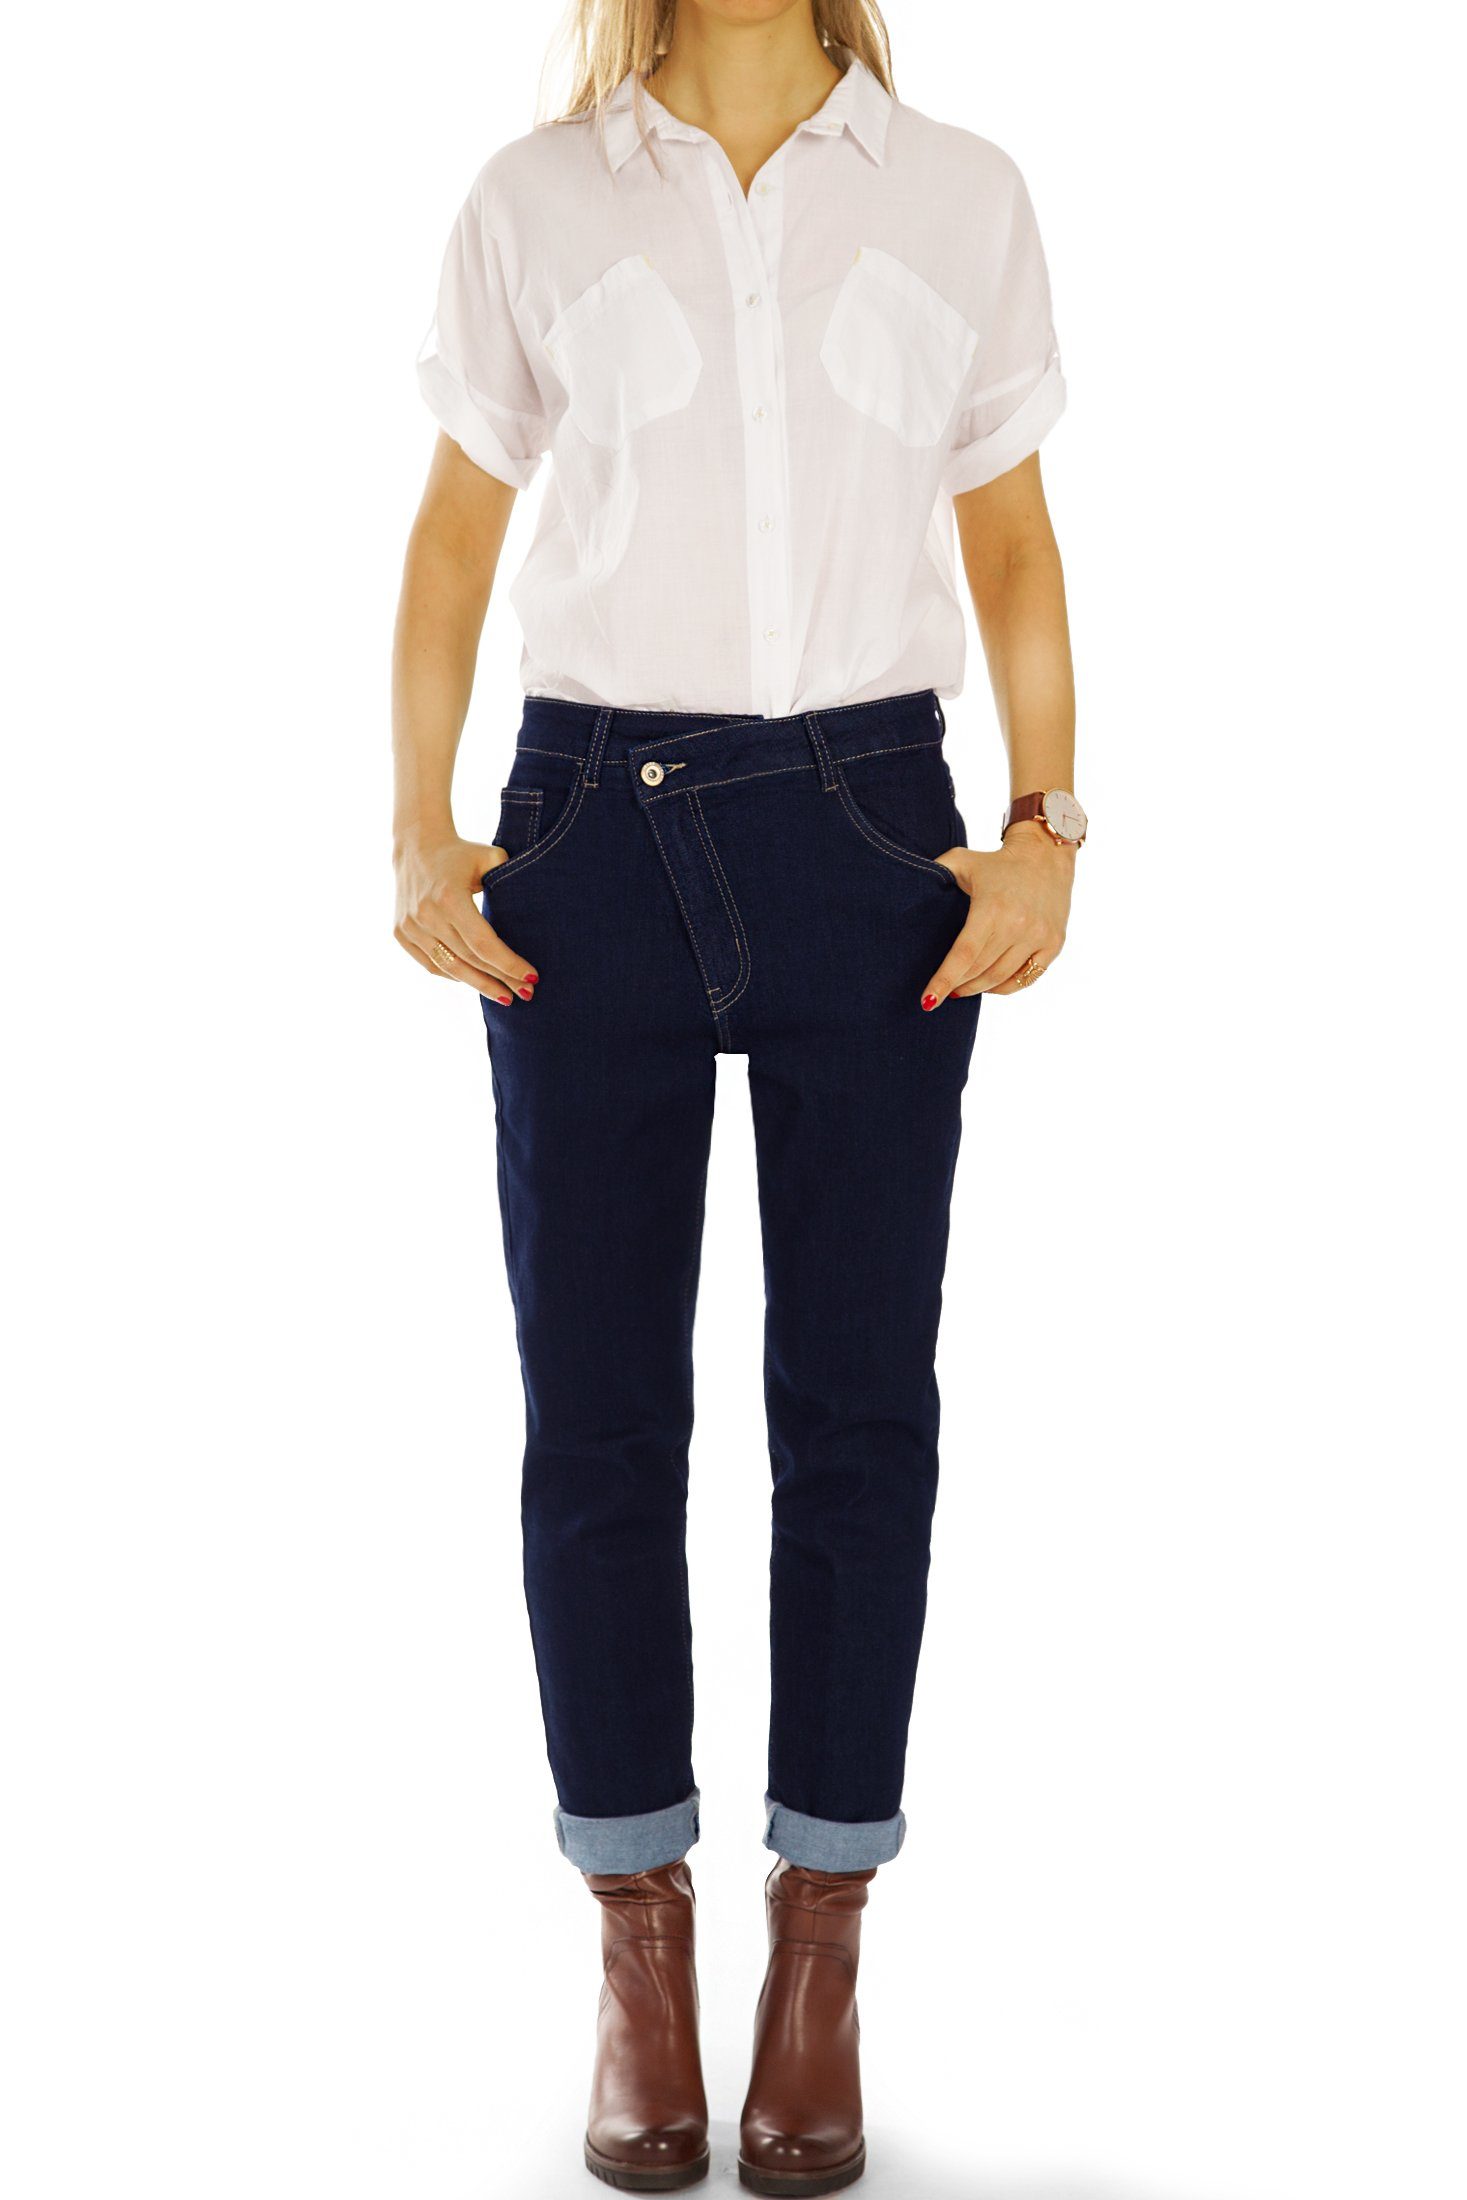 Waist Mom j3f mit 5-Pocket-Style, Medium Jeans styled - - Boyfriend Reißverschluss Stretch-Anteil, schräger Jeans be Hosen Mom-Jeans Damen